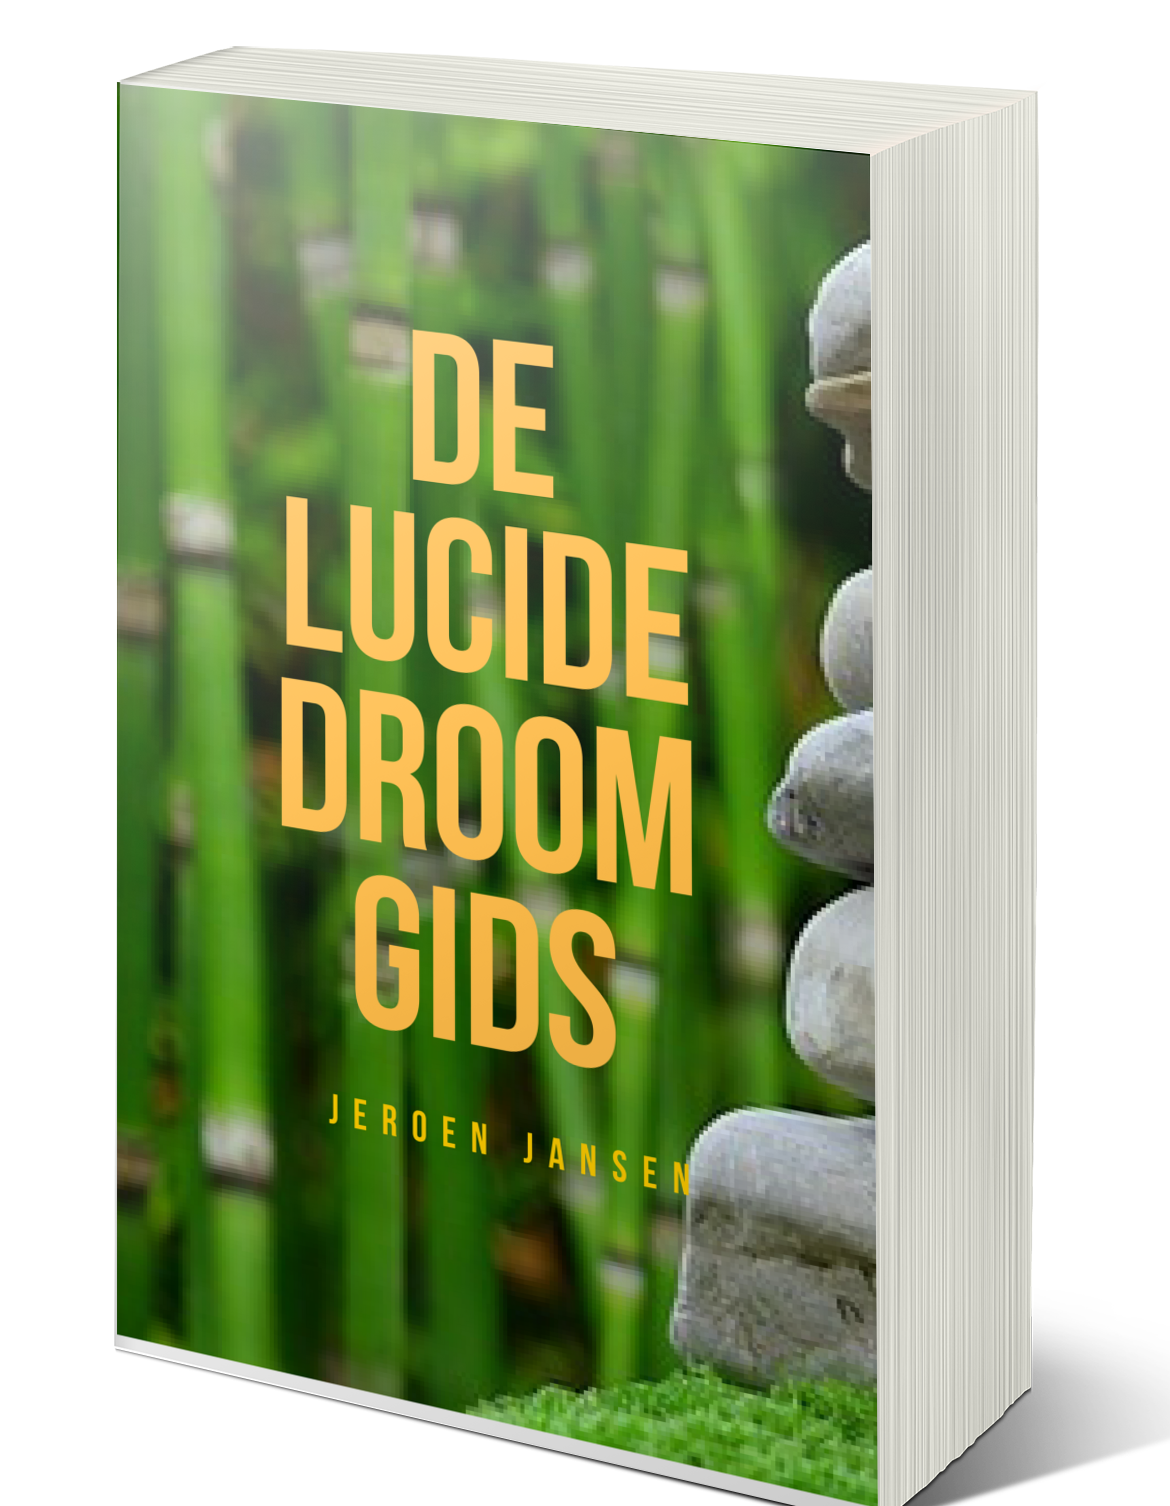 De Lucide Droom Gids - Boek over lucide dromen en meer